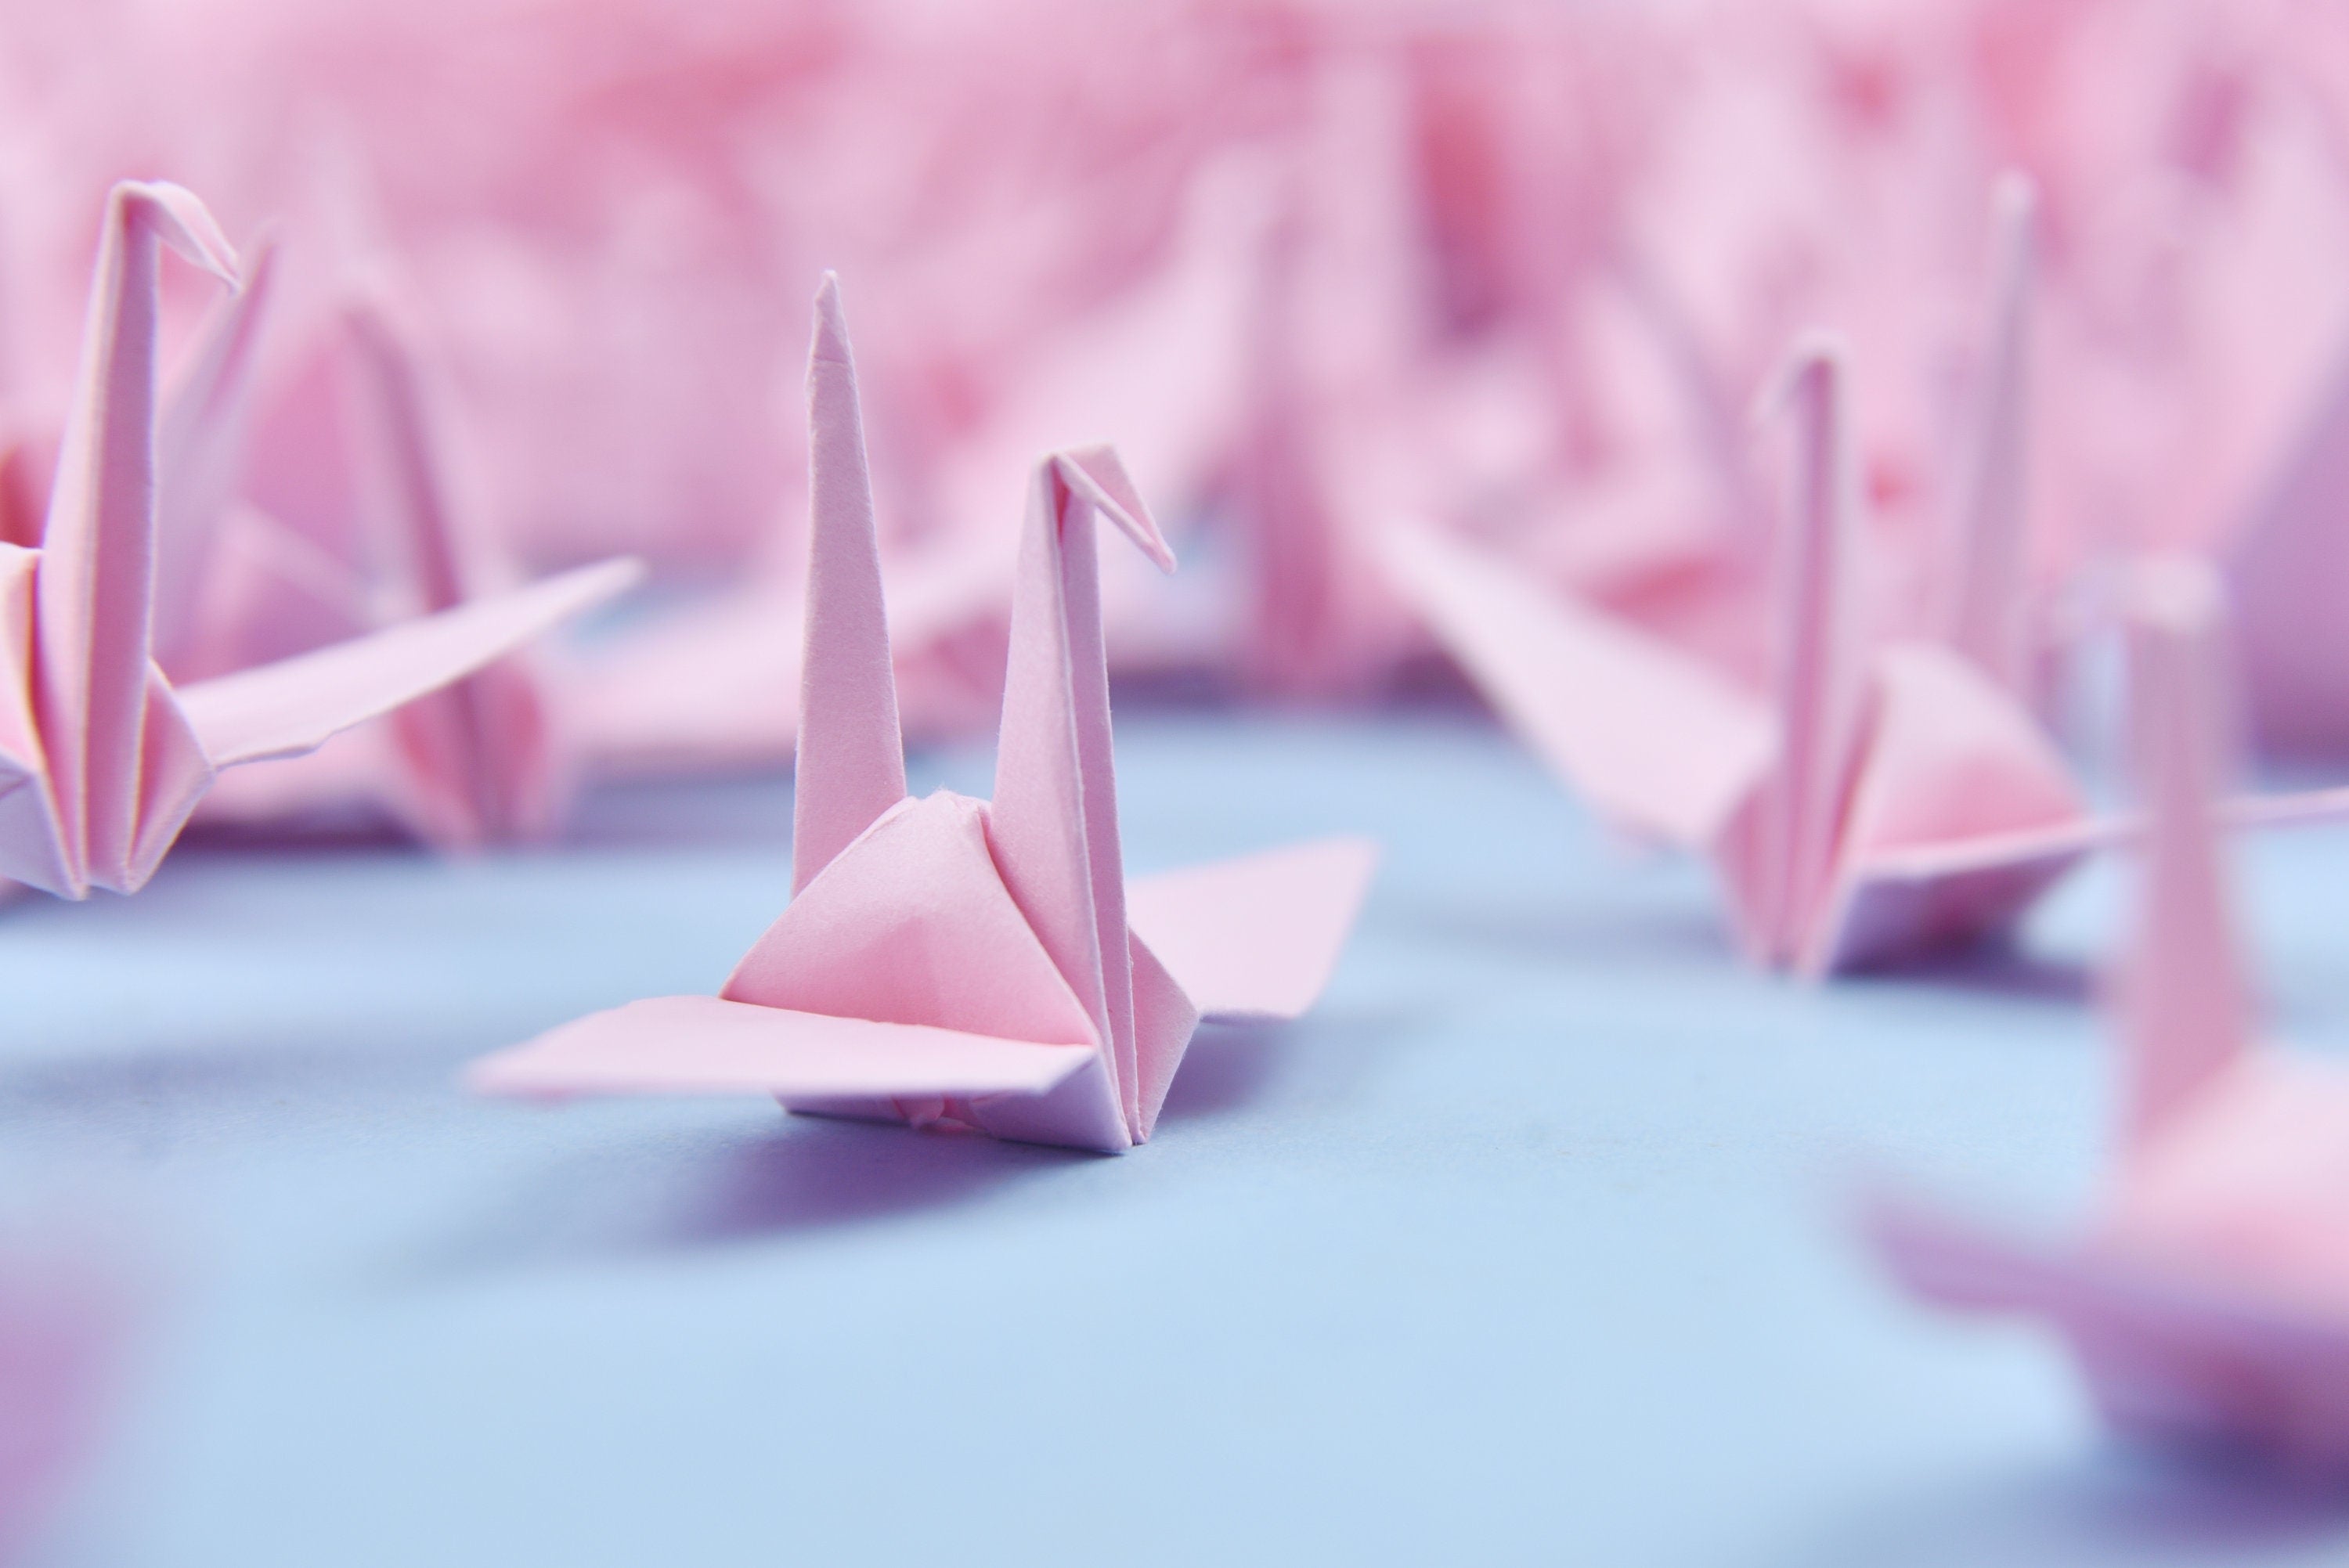 Gru origami con 100 tonalità rosa - Realizzata in 7,5 cm (3x3 pollici) - per matrimonio, regalo di San Valentino, Natale